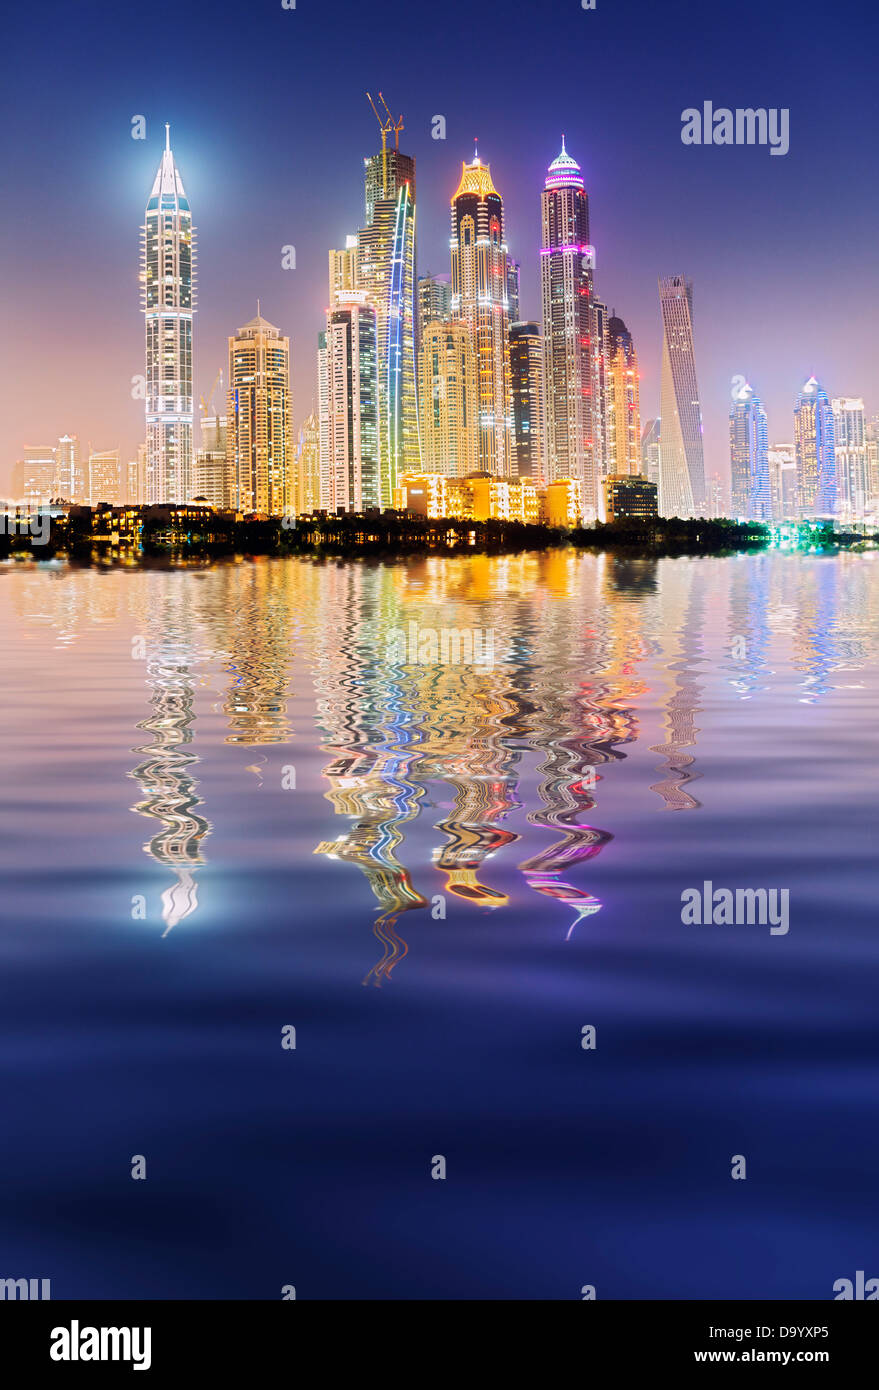 Por la noche el horizonte de rascacielos en la zona del puerto deportivo de Dubai, Emiratos Árabes Unidos Foto de stock